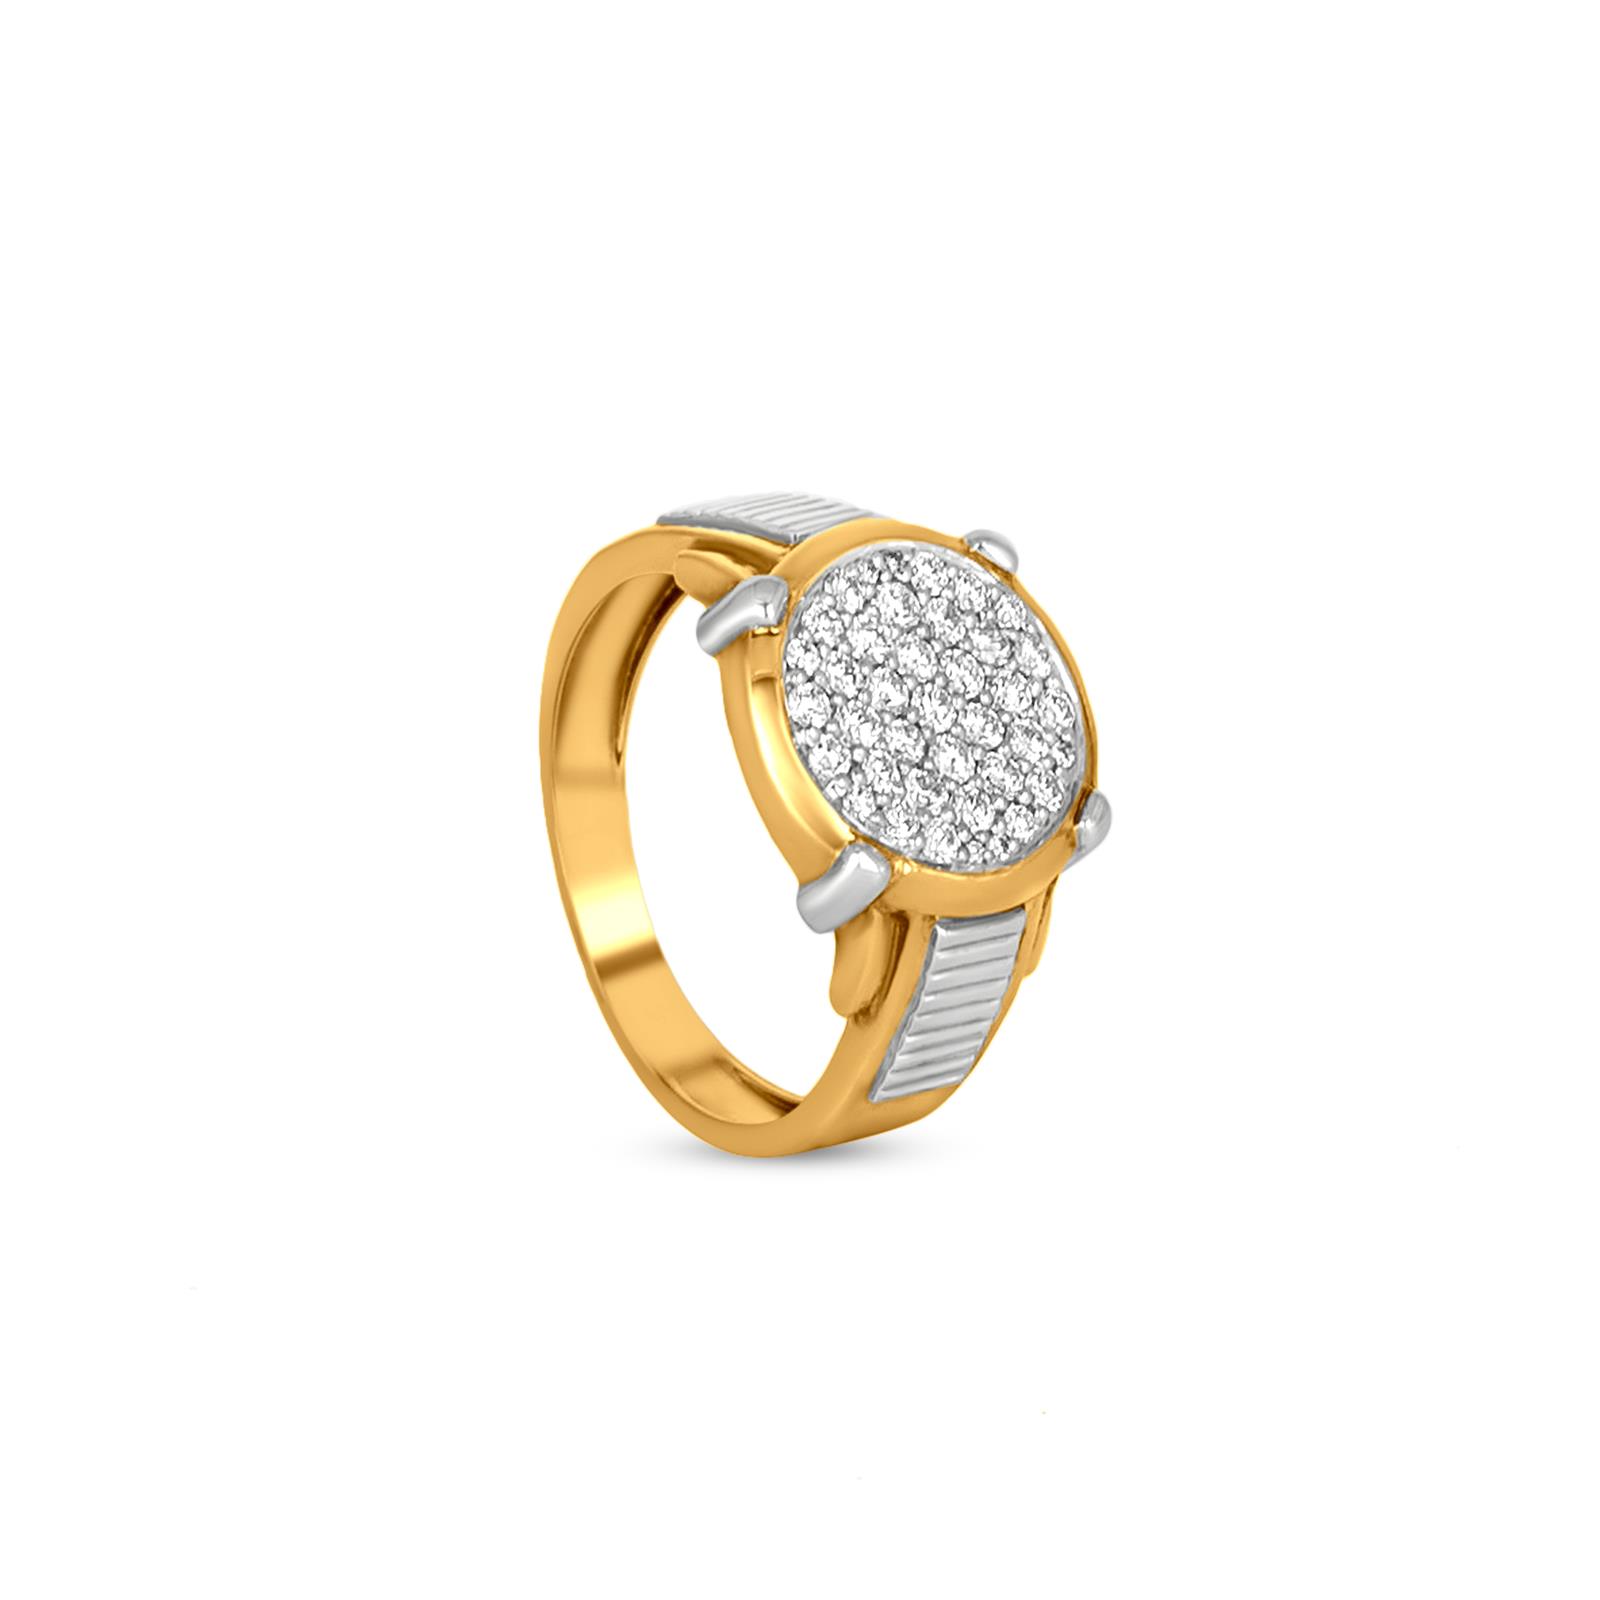 Buy ZEELLO copper finger ring| Finger ring design silver|Finger ring silver  new design Online at Best Prices in India - JioMart.